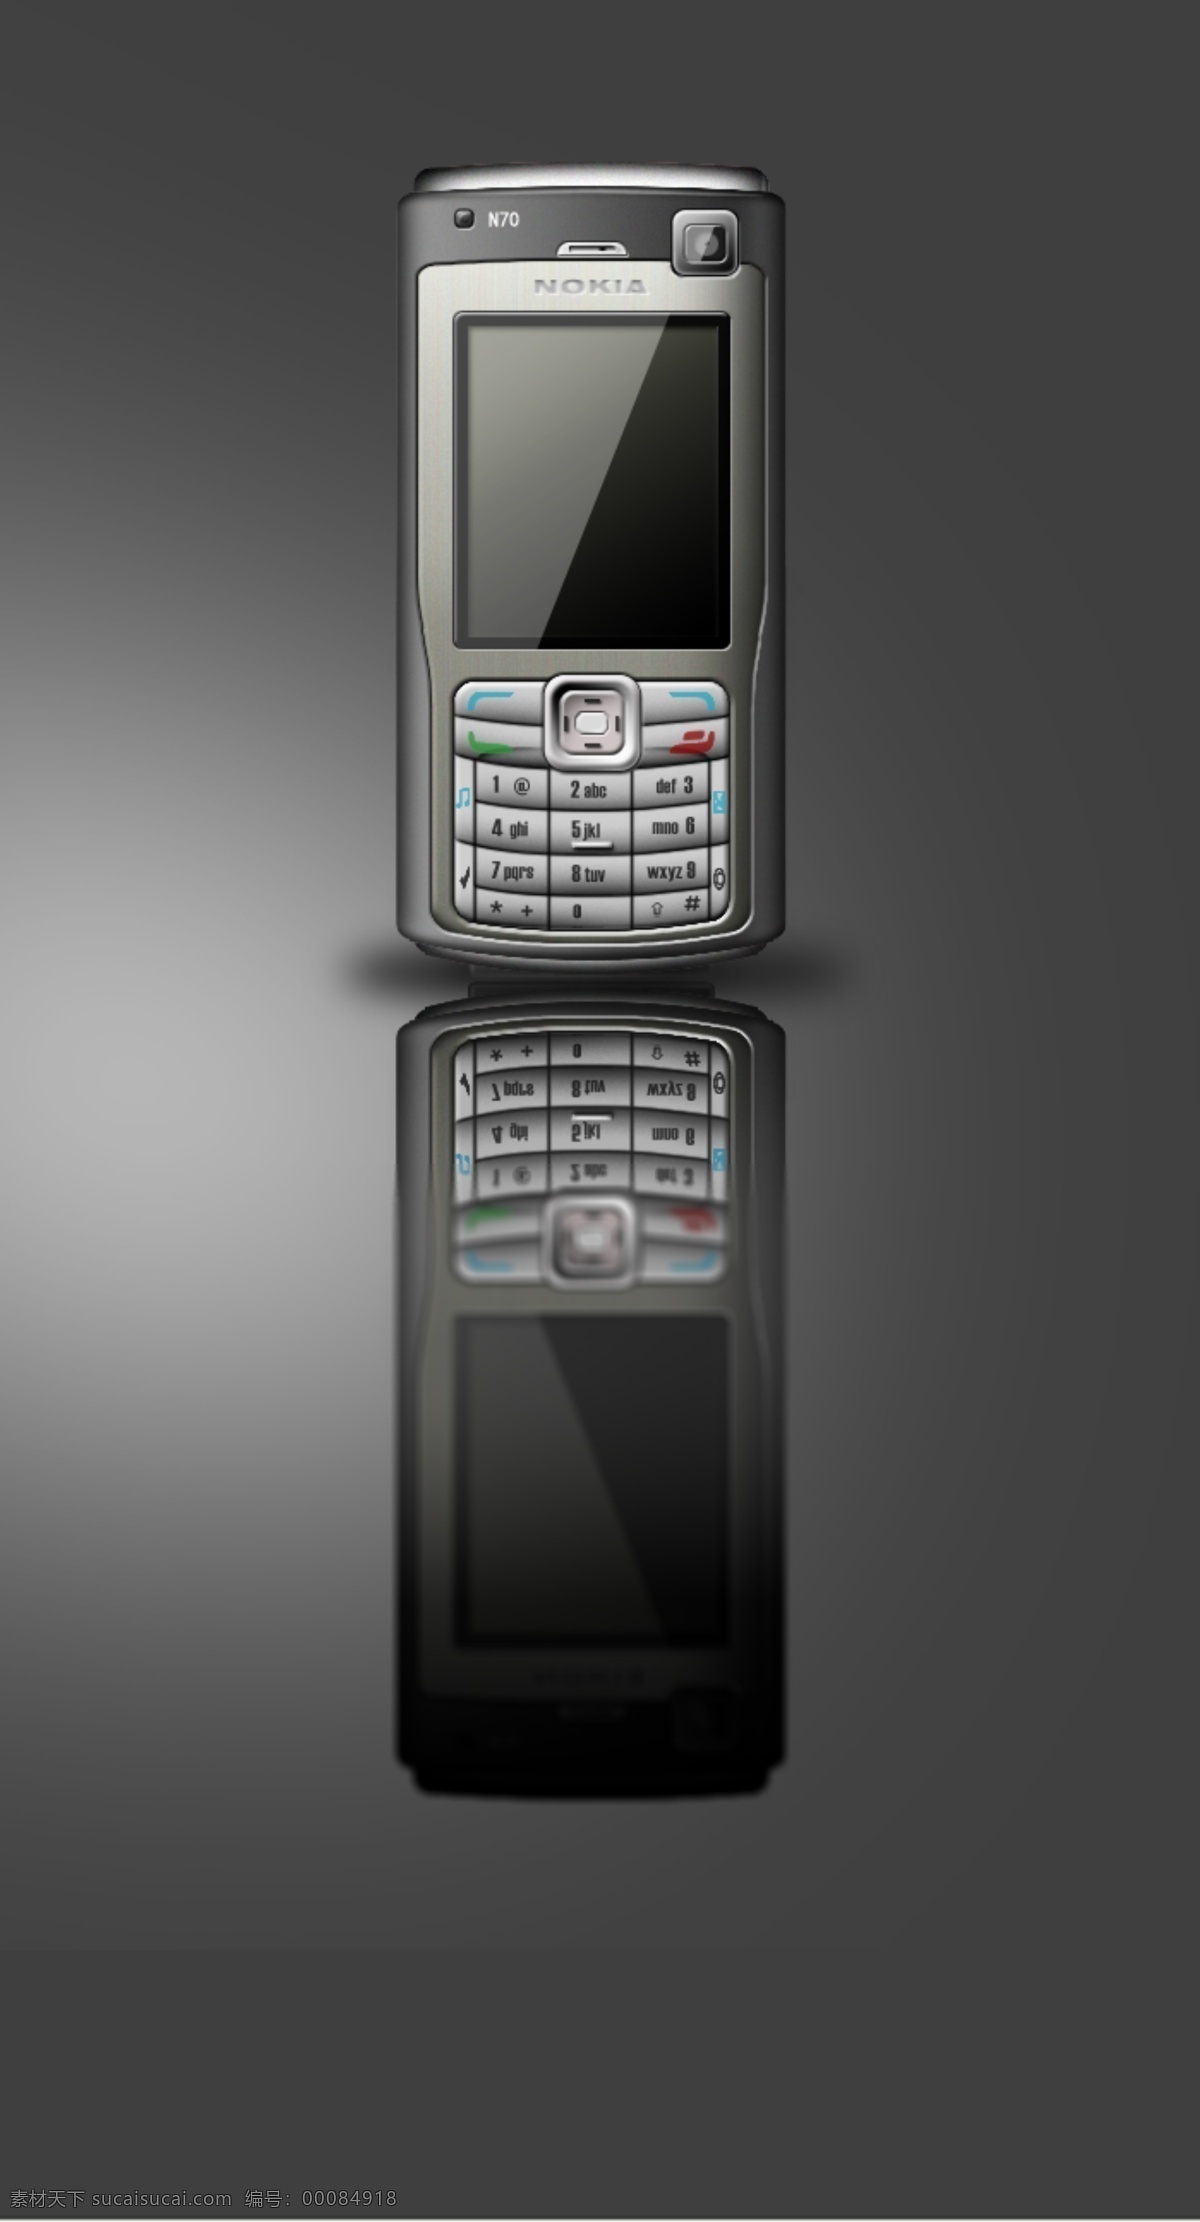 手机 效果图 诺基亚 n70 手机效果图 ps 产品 psd源文件